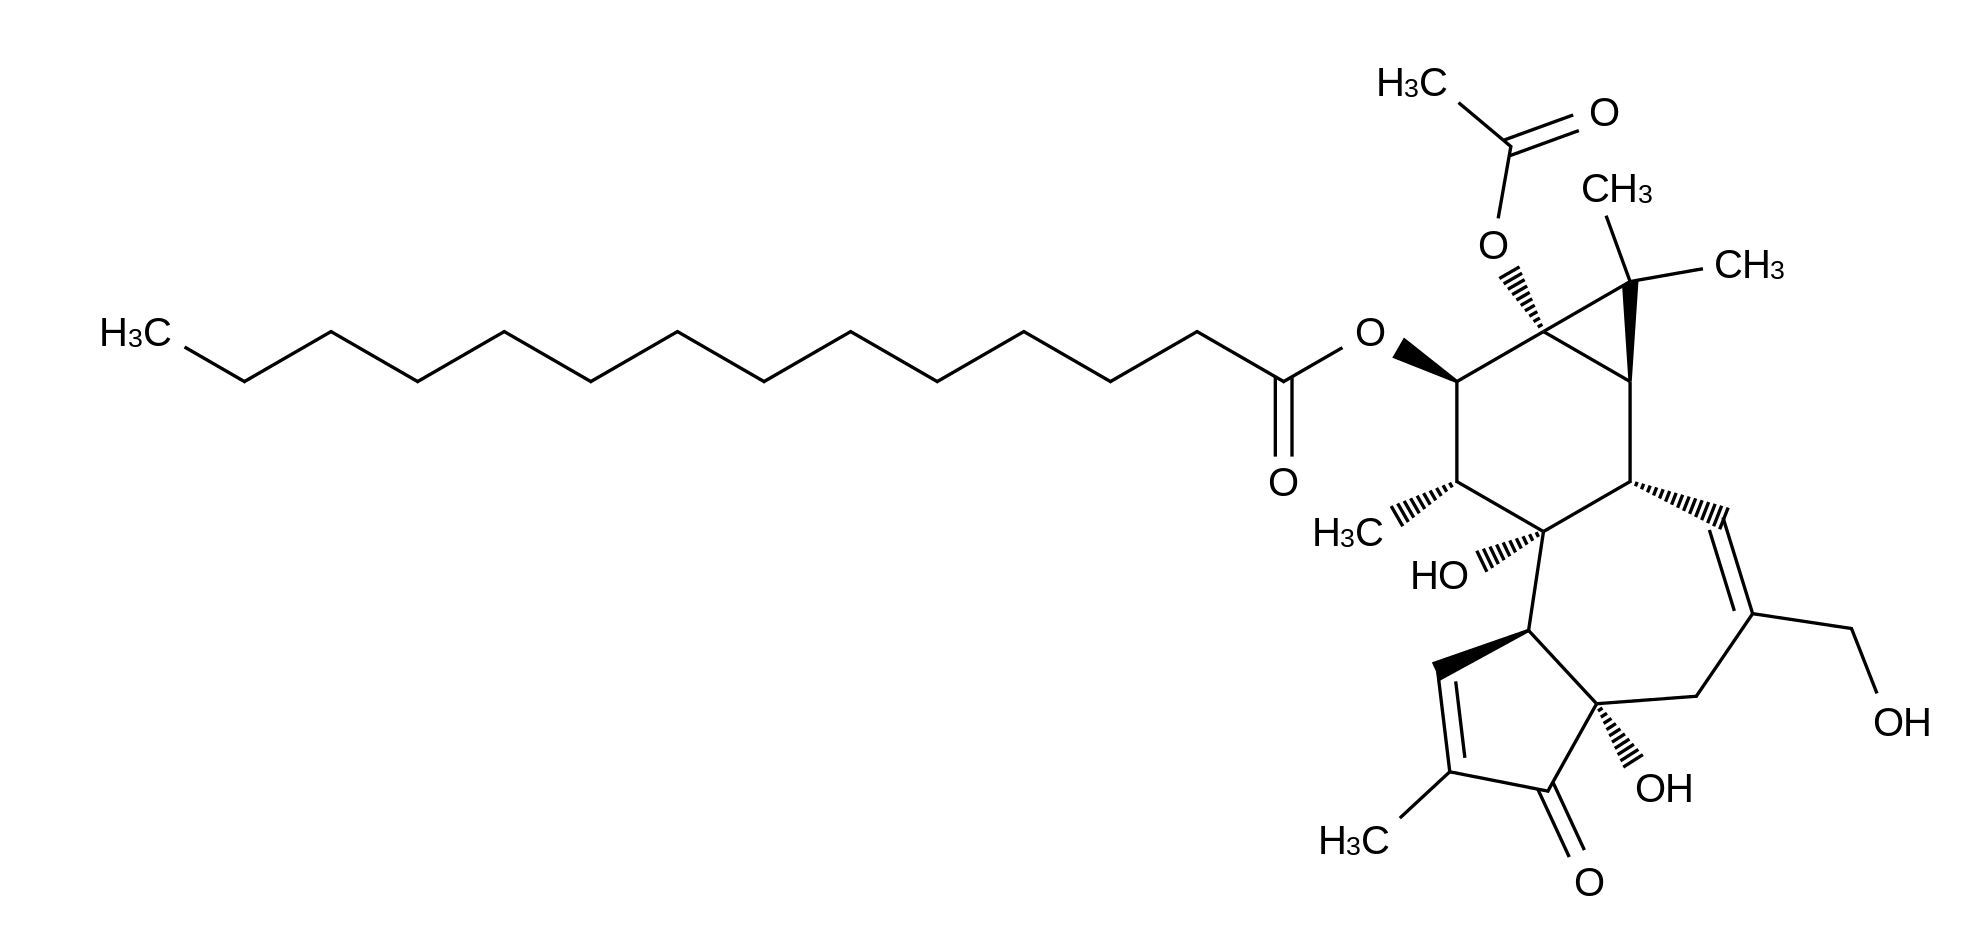 4α-Phorbol 12-Myristate 13-Acetate